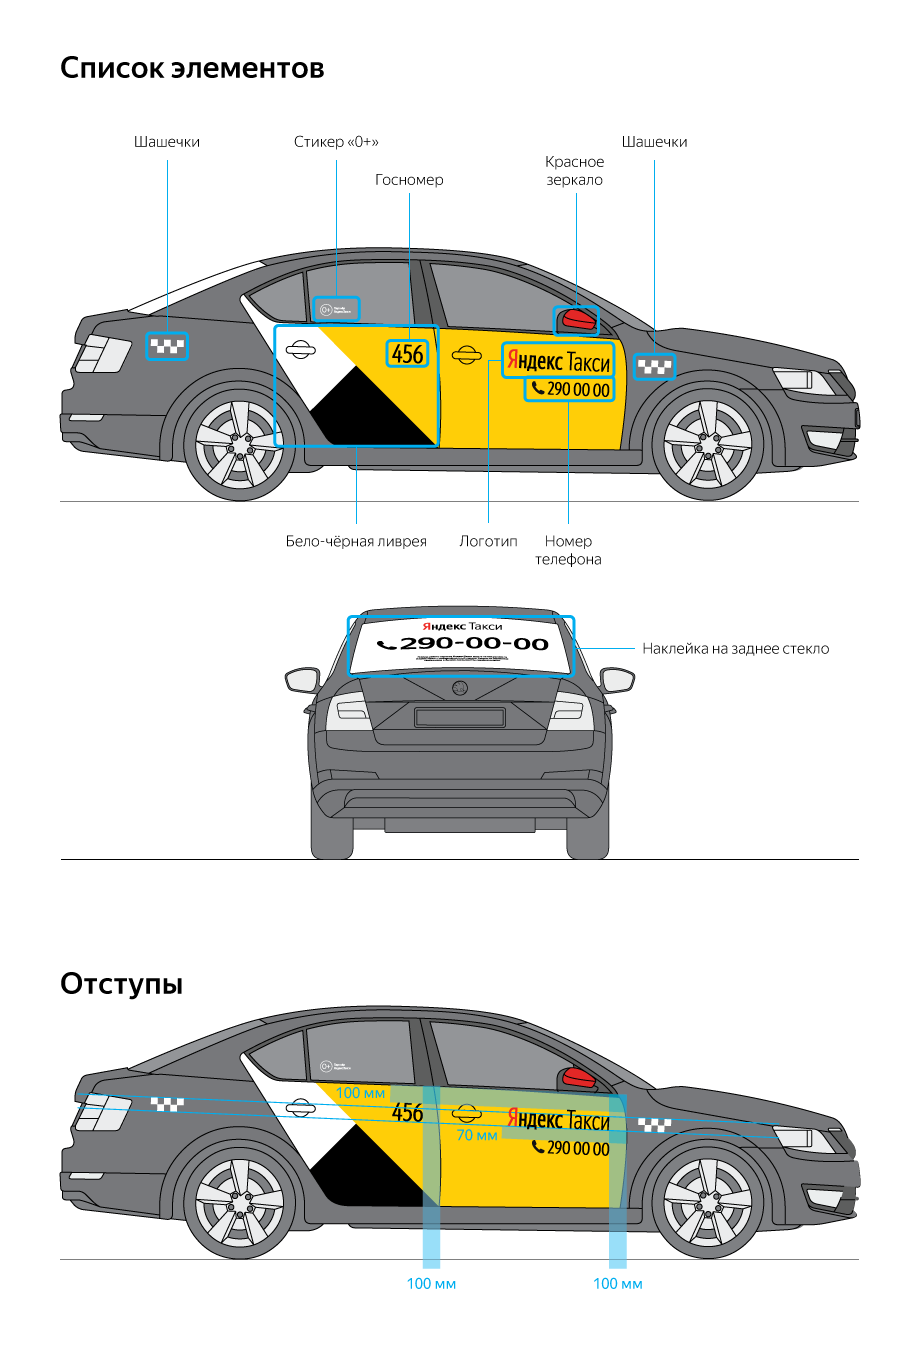 Ливрея Яндекс такси